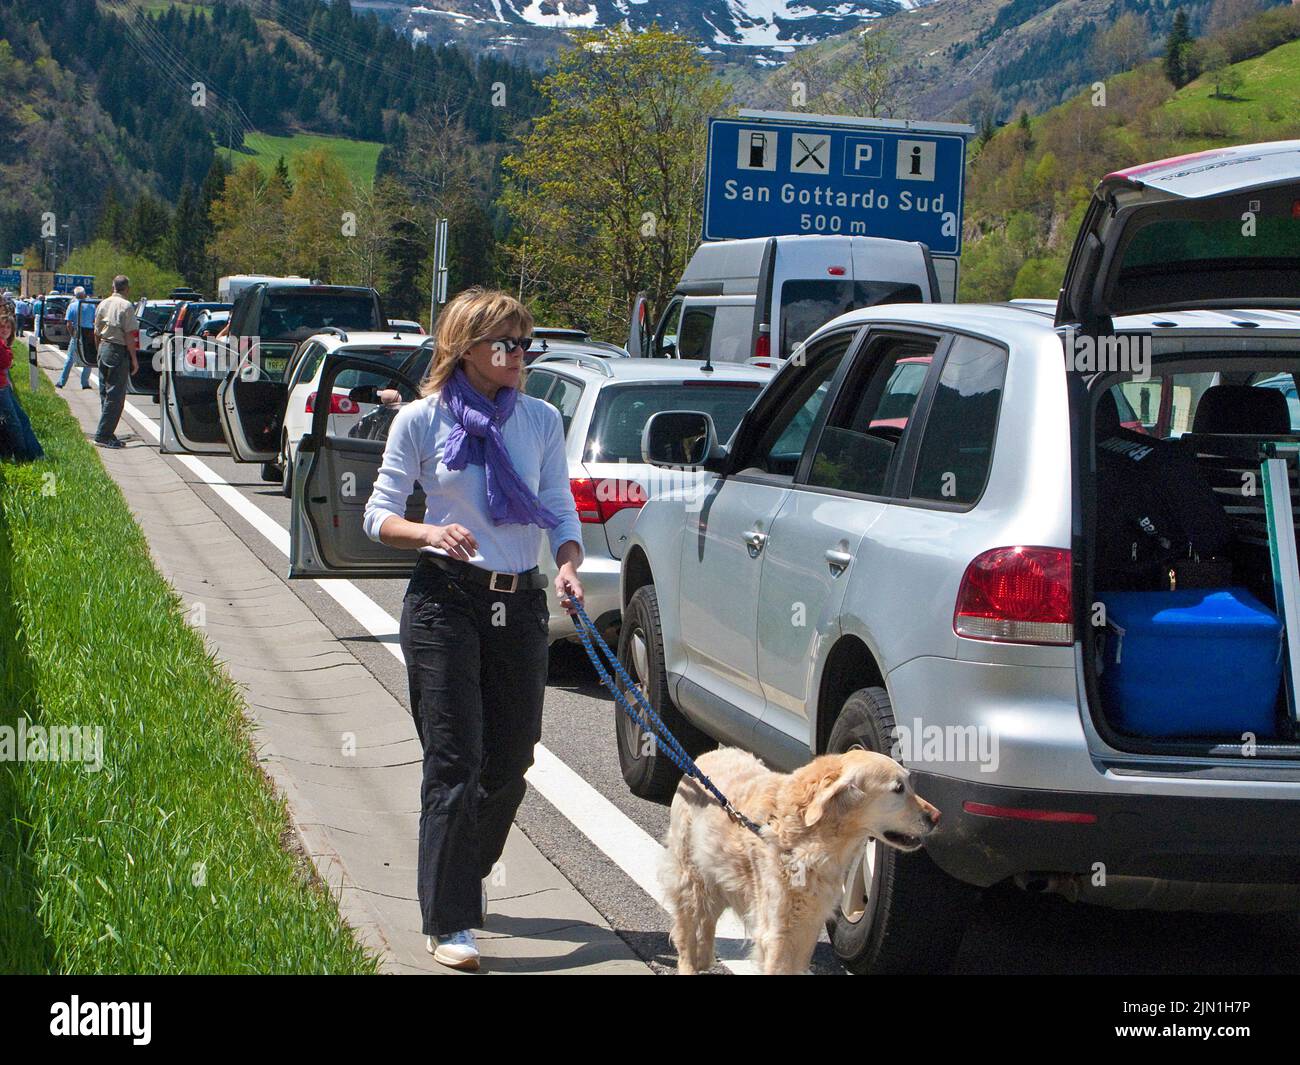 Autoreihe, Stau auf der Autobahn beim San Gotthard-Tunnel, Schweiz, Europa Stockfoto